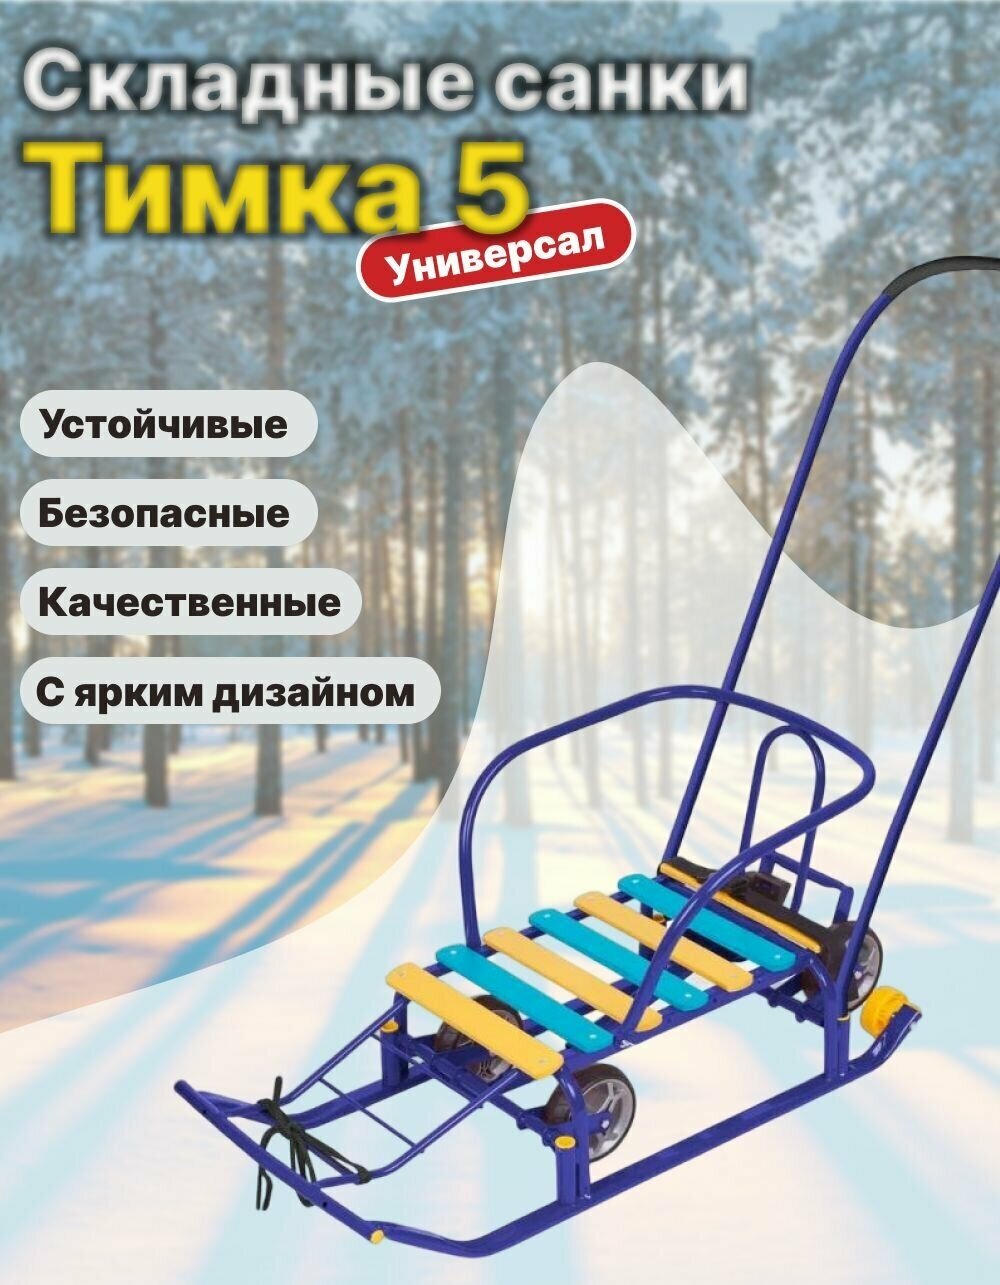 Санки Nika Тимка 5 универсал (синий)